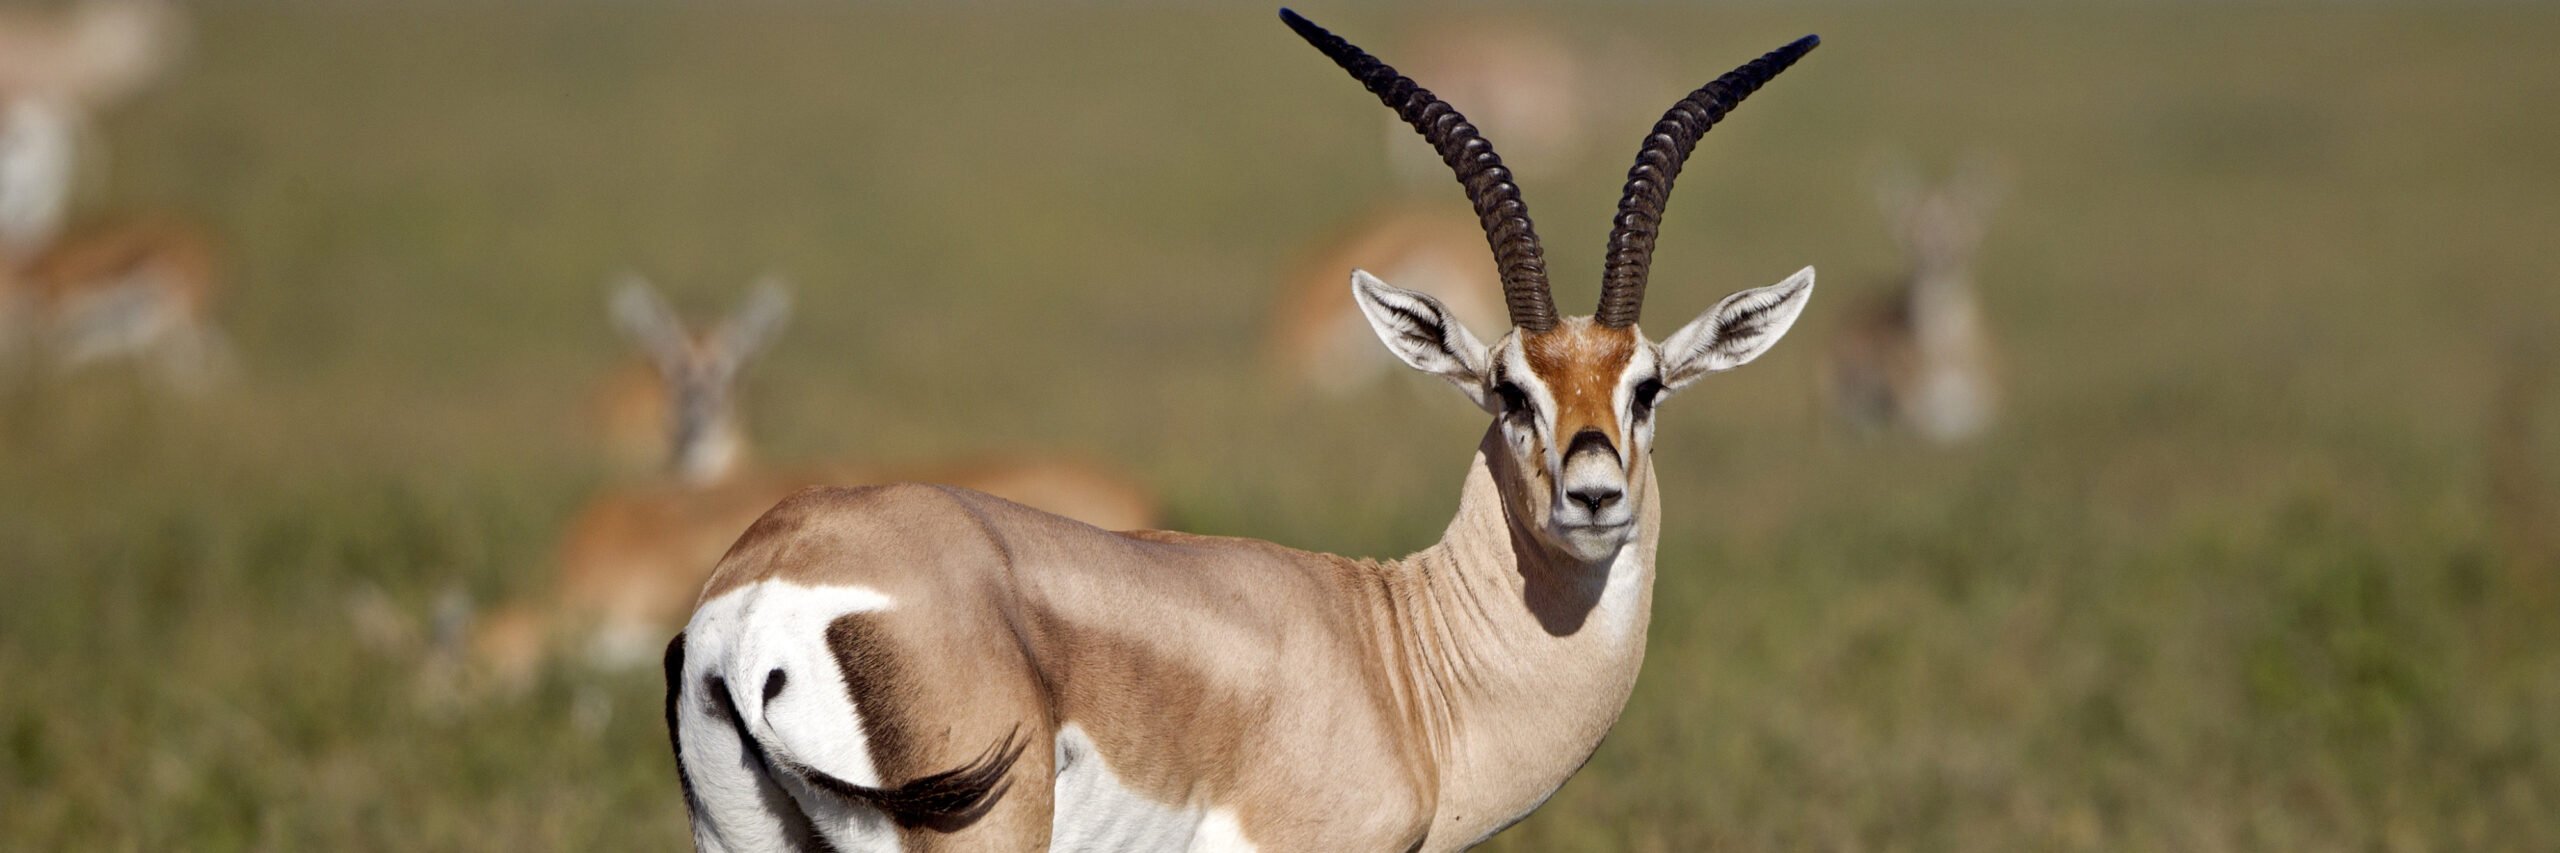 roberts-gazelle